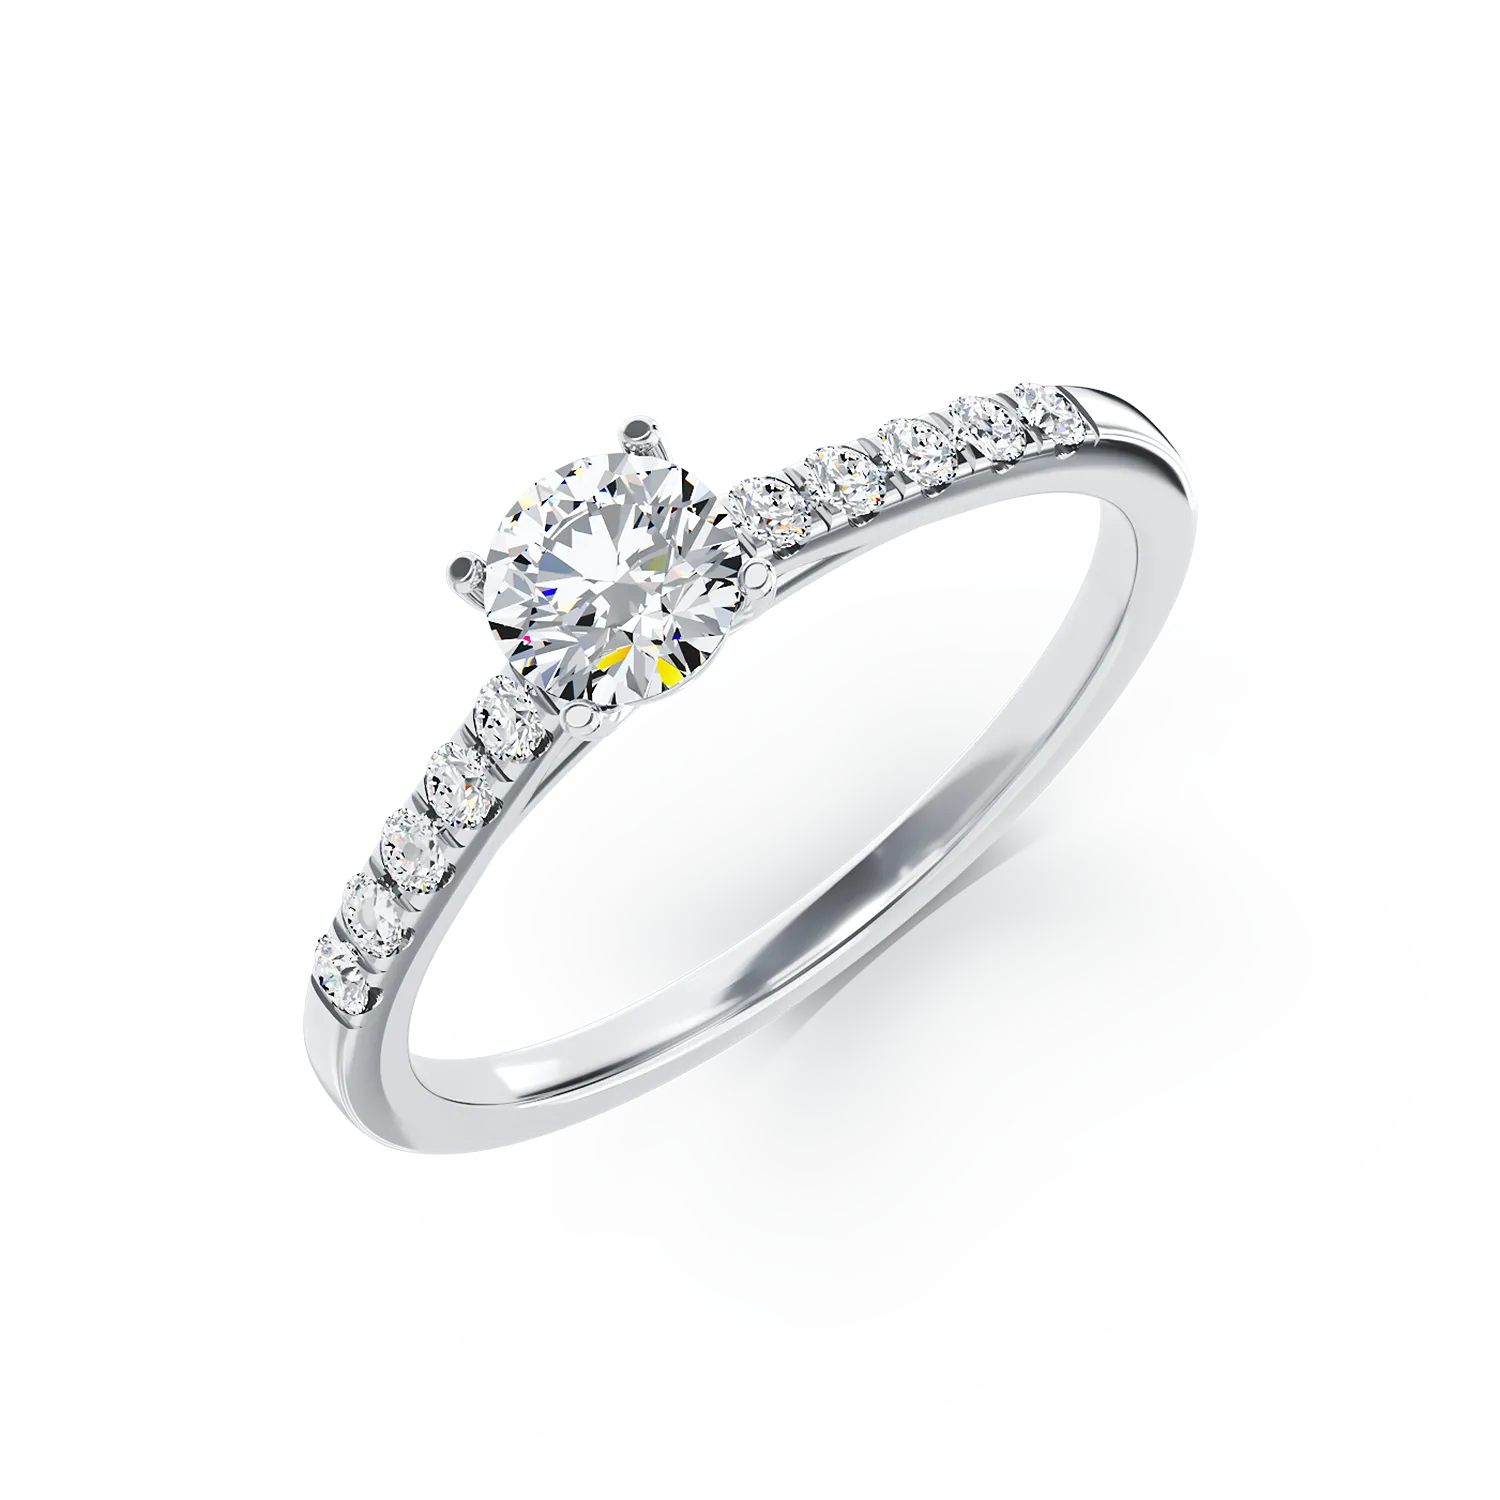 Eljegyzési gyűrű 18K-os fehér aranyból 0,4ct gyémánttal és 0,14ct gyémántokkal. Gramm: 3.15